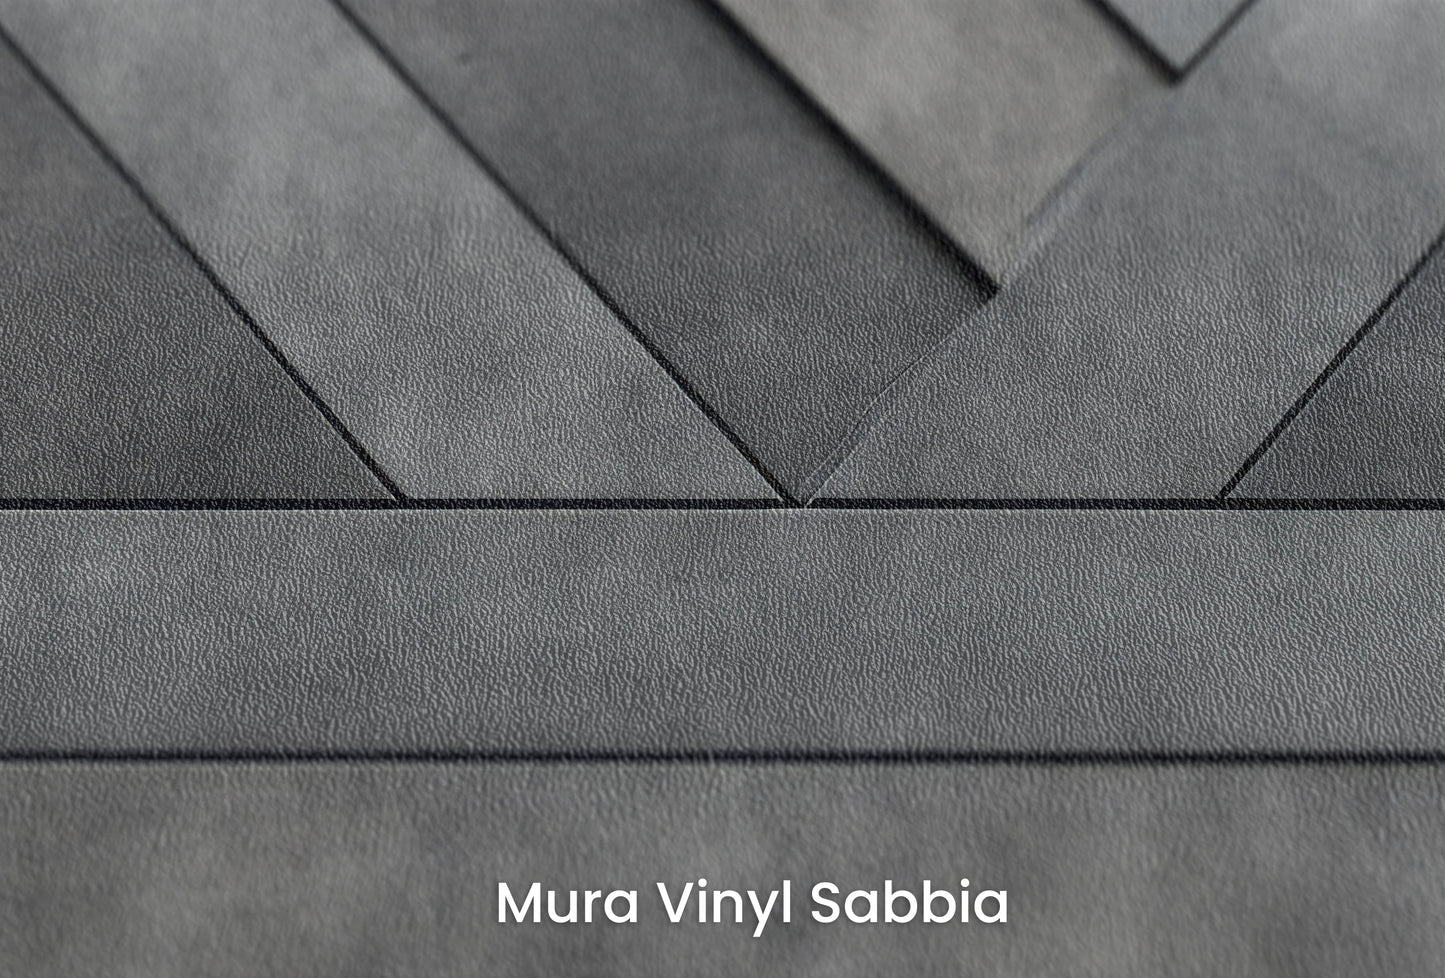 Zbliżenie na artystyczną fototapetę o nazwie Geometric Weave na podłożu Mura Vinyl Sabbia struktura grubego ziarna piasku.